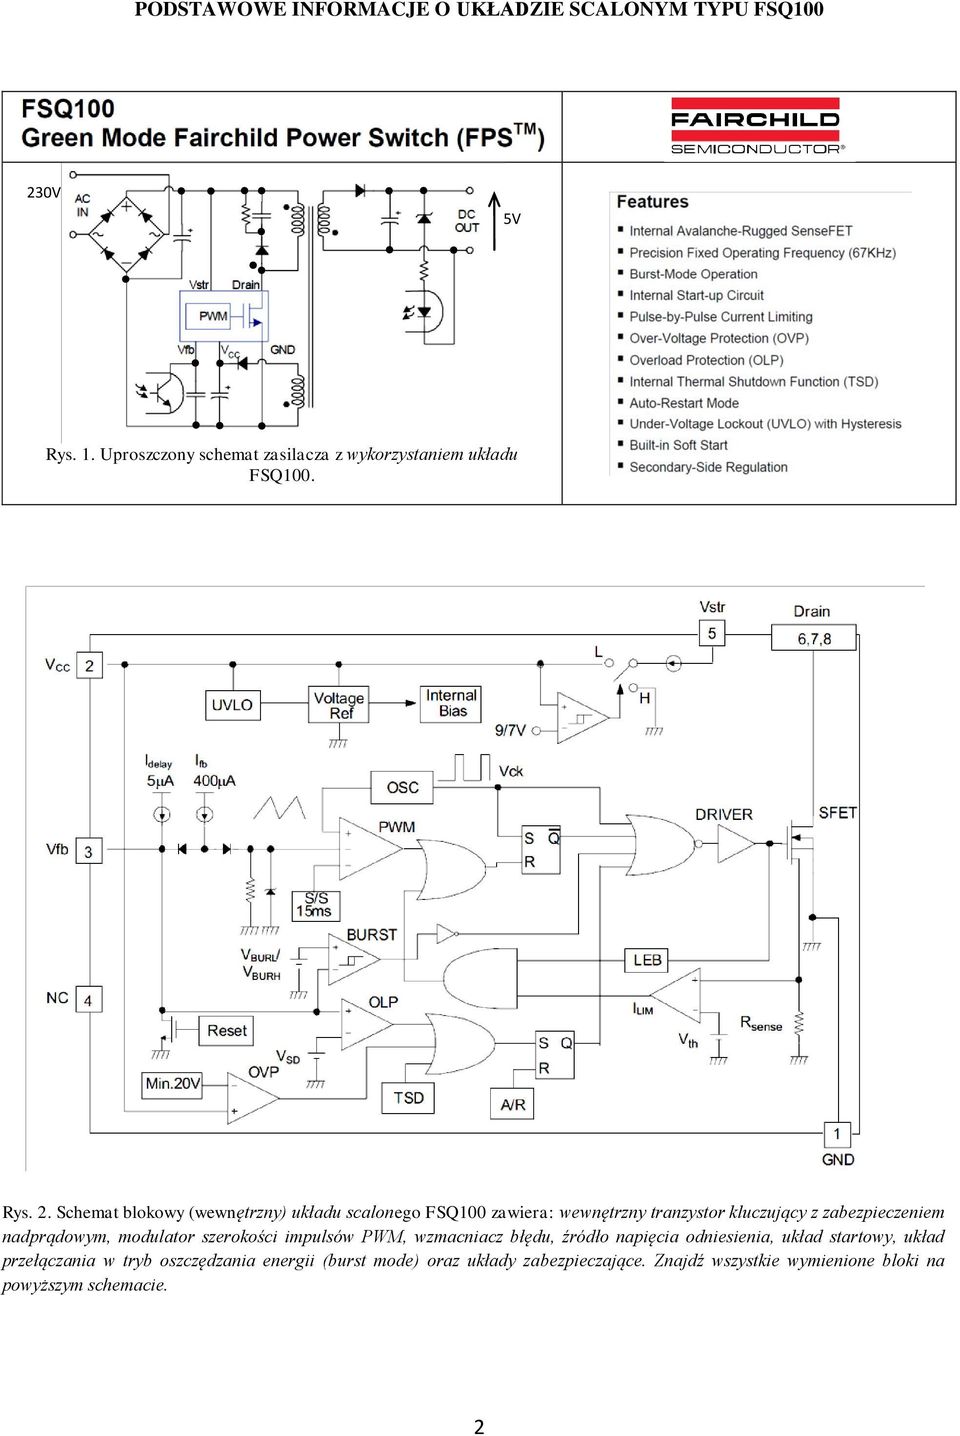 Schemat blokowy (wewnętrzny) układu scalonego FSQ100 zawiera: wewnętrzny tranzystor kluczujący z zabezpieczeniem nadprądowym,